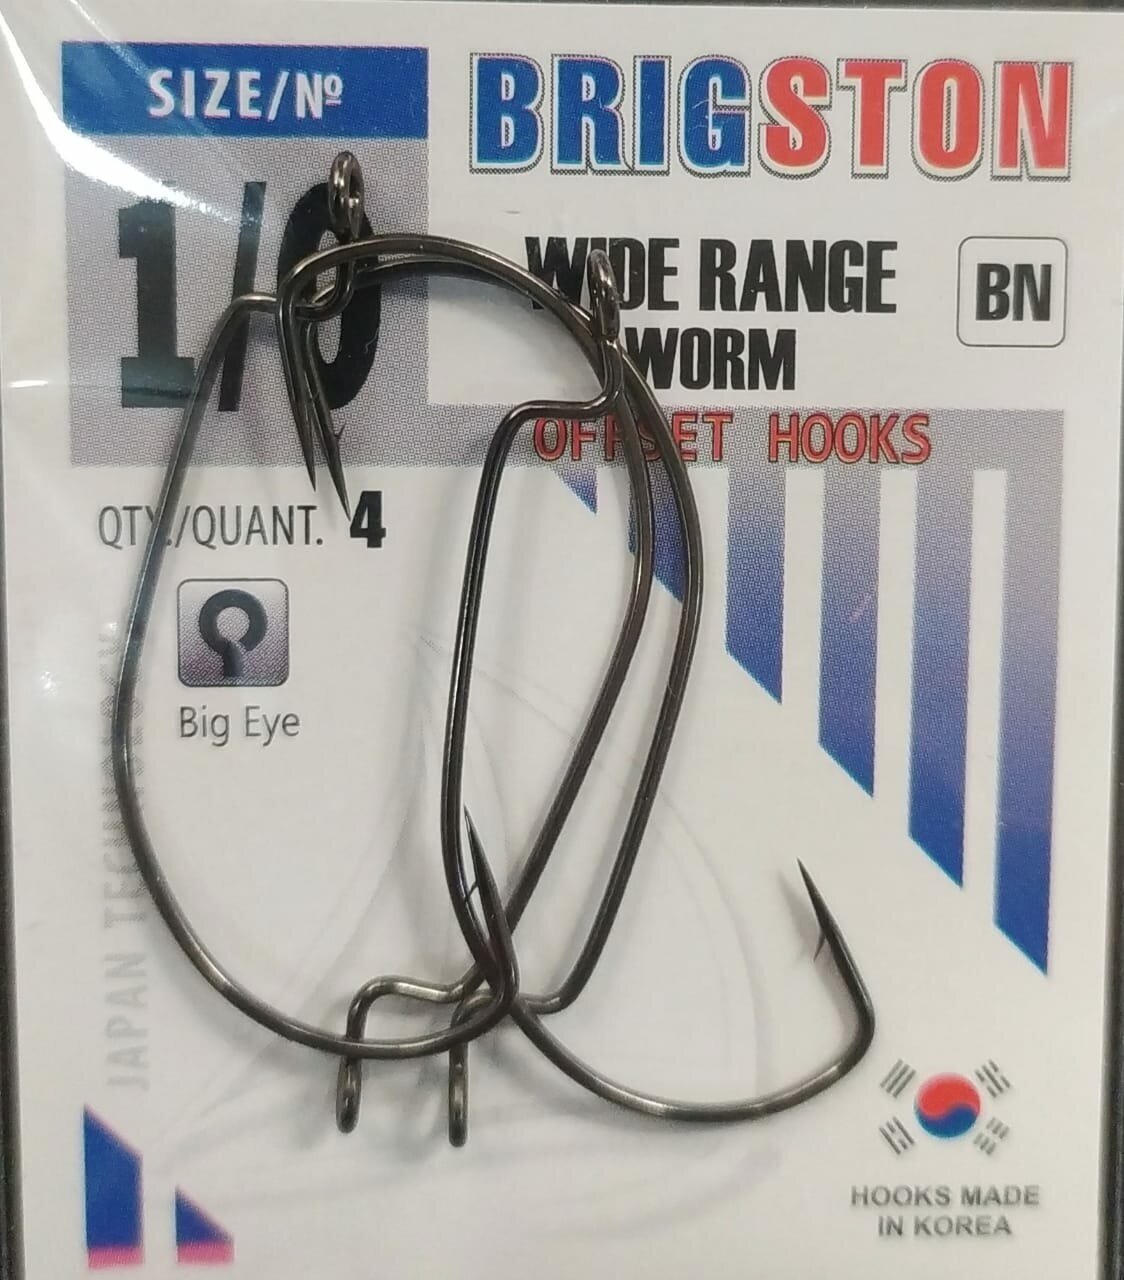 Рыболовные офсетные крючки Brigston Wide Range Worm (BN) №1\0 упаковка 4 штуки